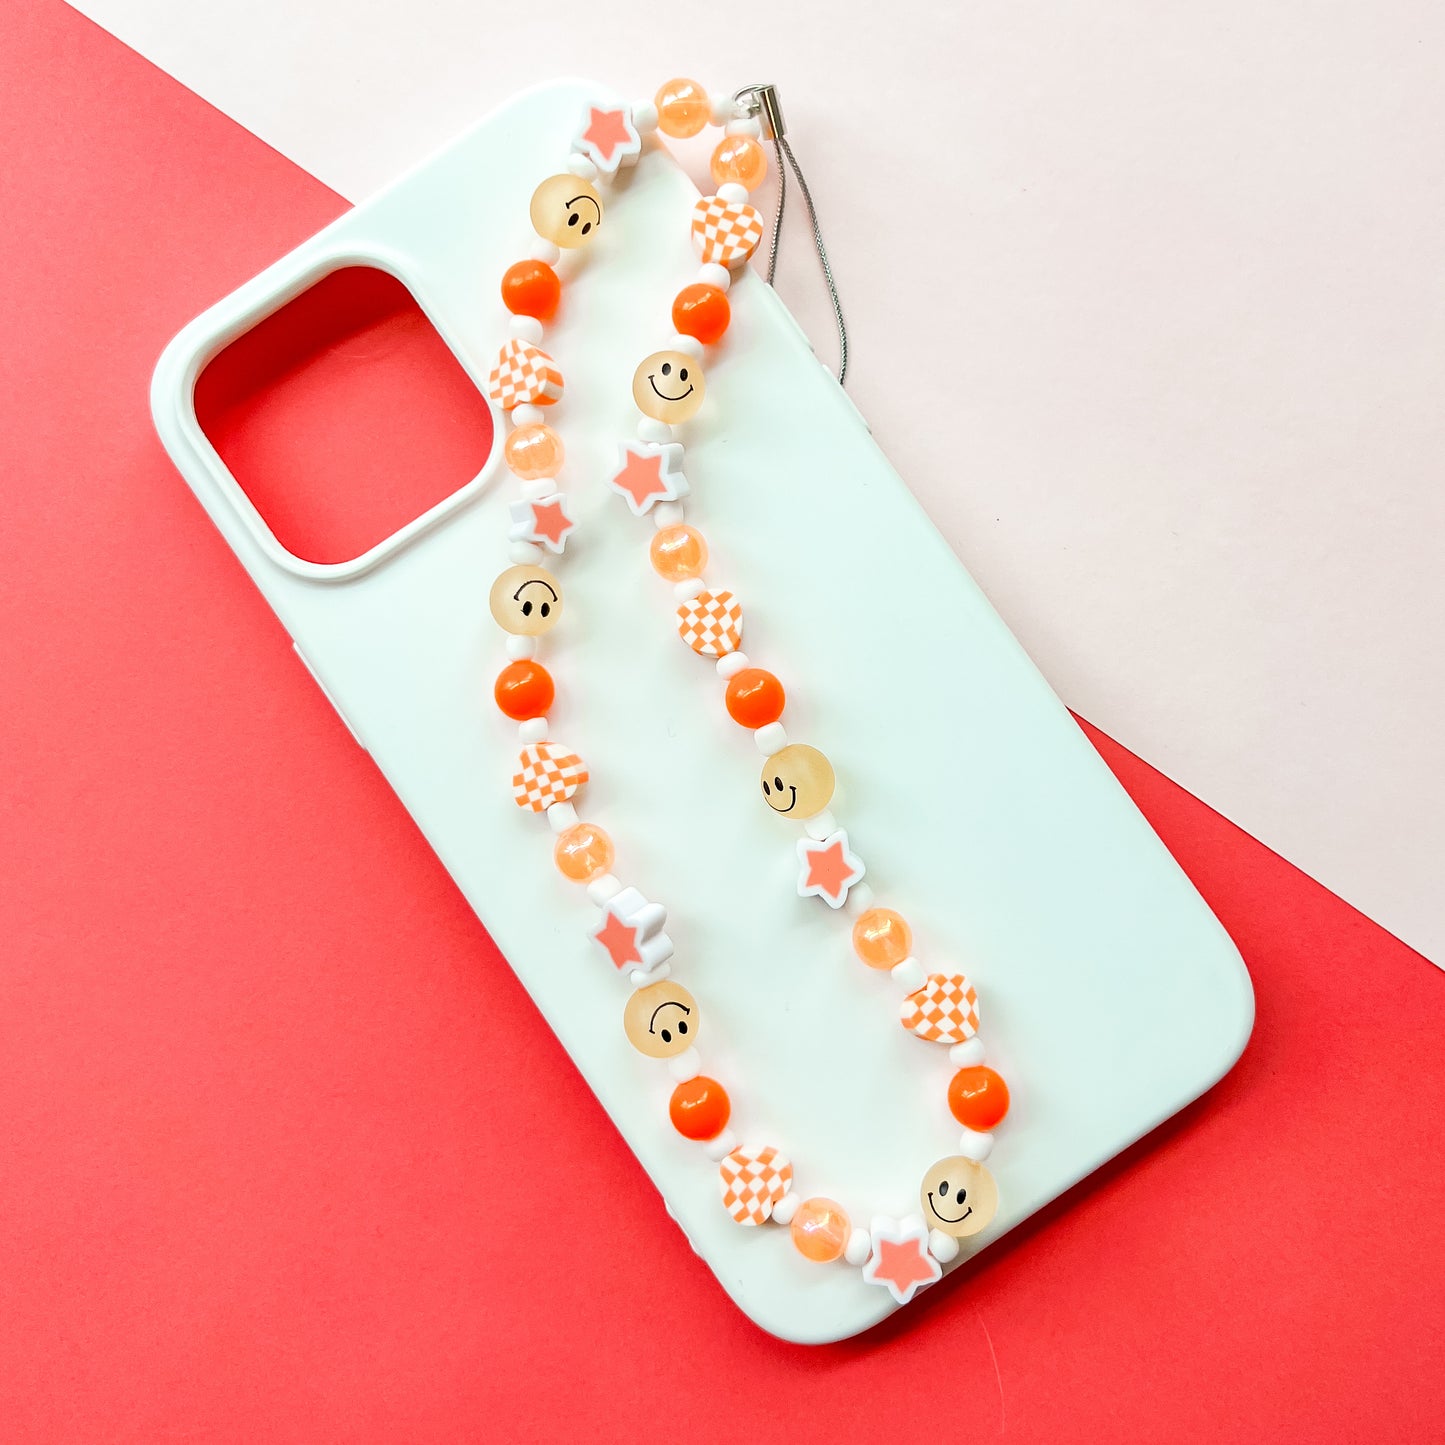 Orange & White Phone/Bag Charm